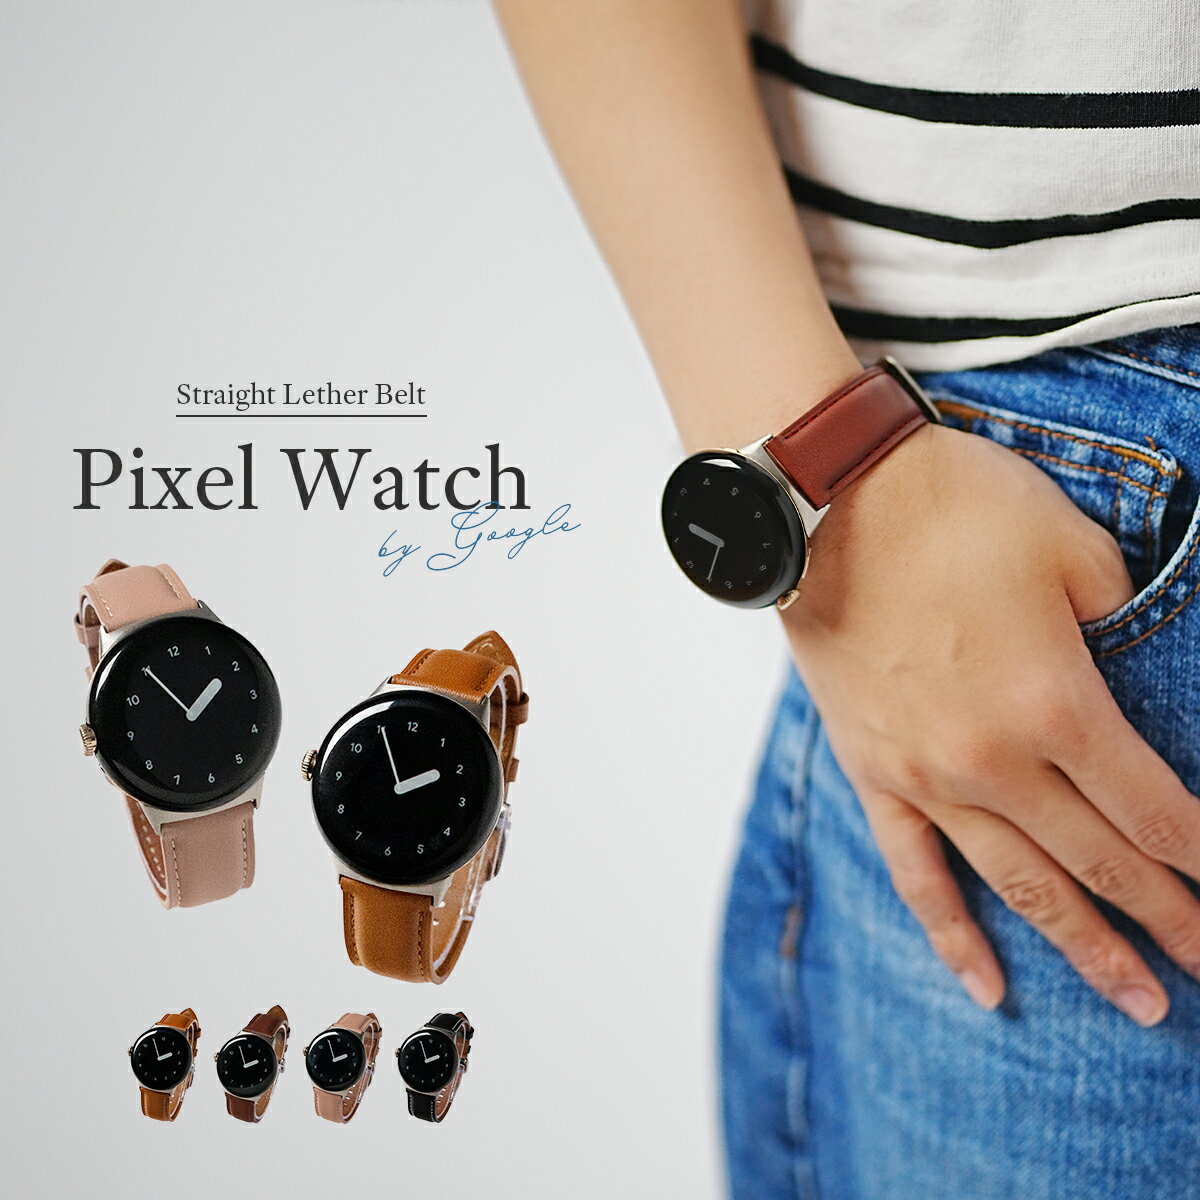 【最大30%OFFクーポン】 Pixel Watch レザーバンド 革 Pixel Watch ピクセルウォッチ ピクセル バンド Pixel Watch ケース Google Pixel Watch ベルト Google Pixel Watch バンド グーグル ウオッチ レディース 女性